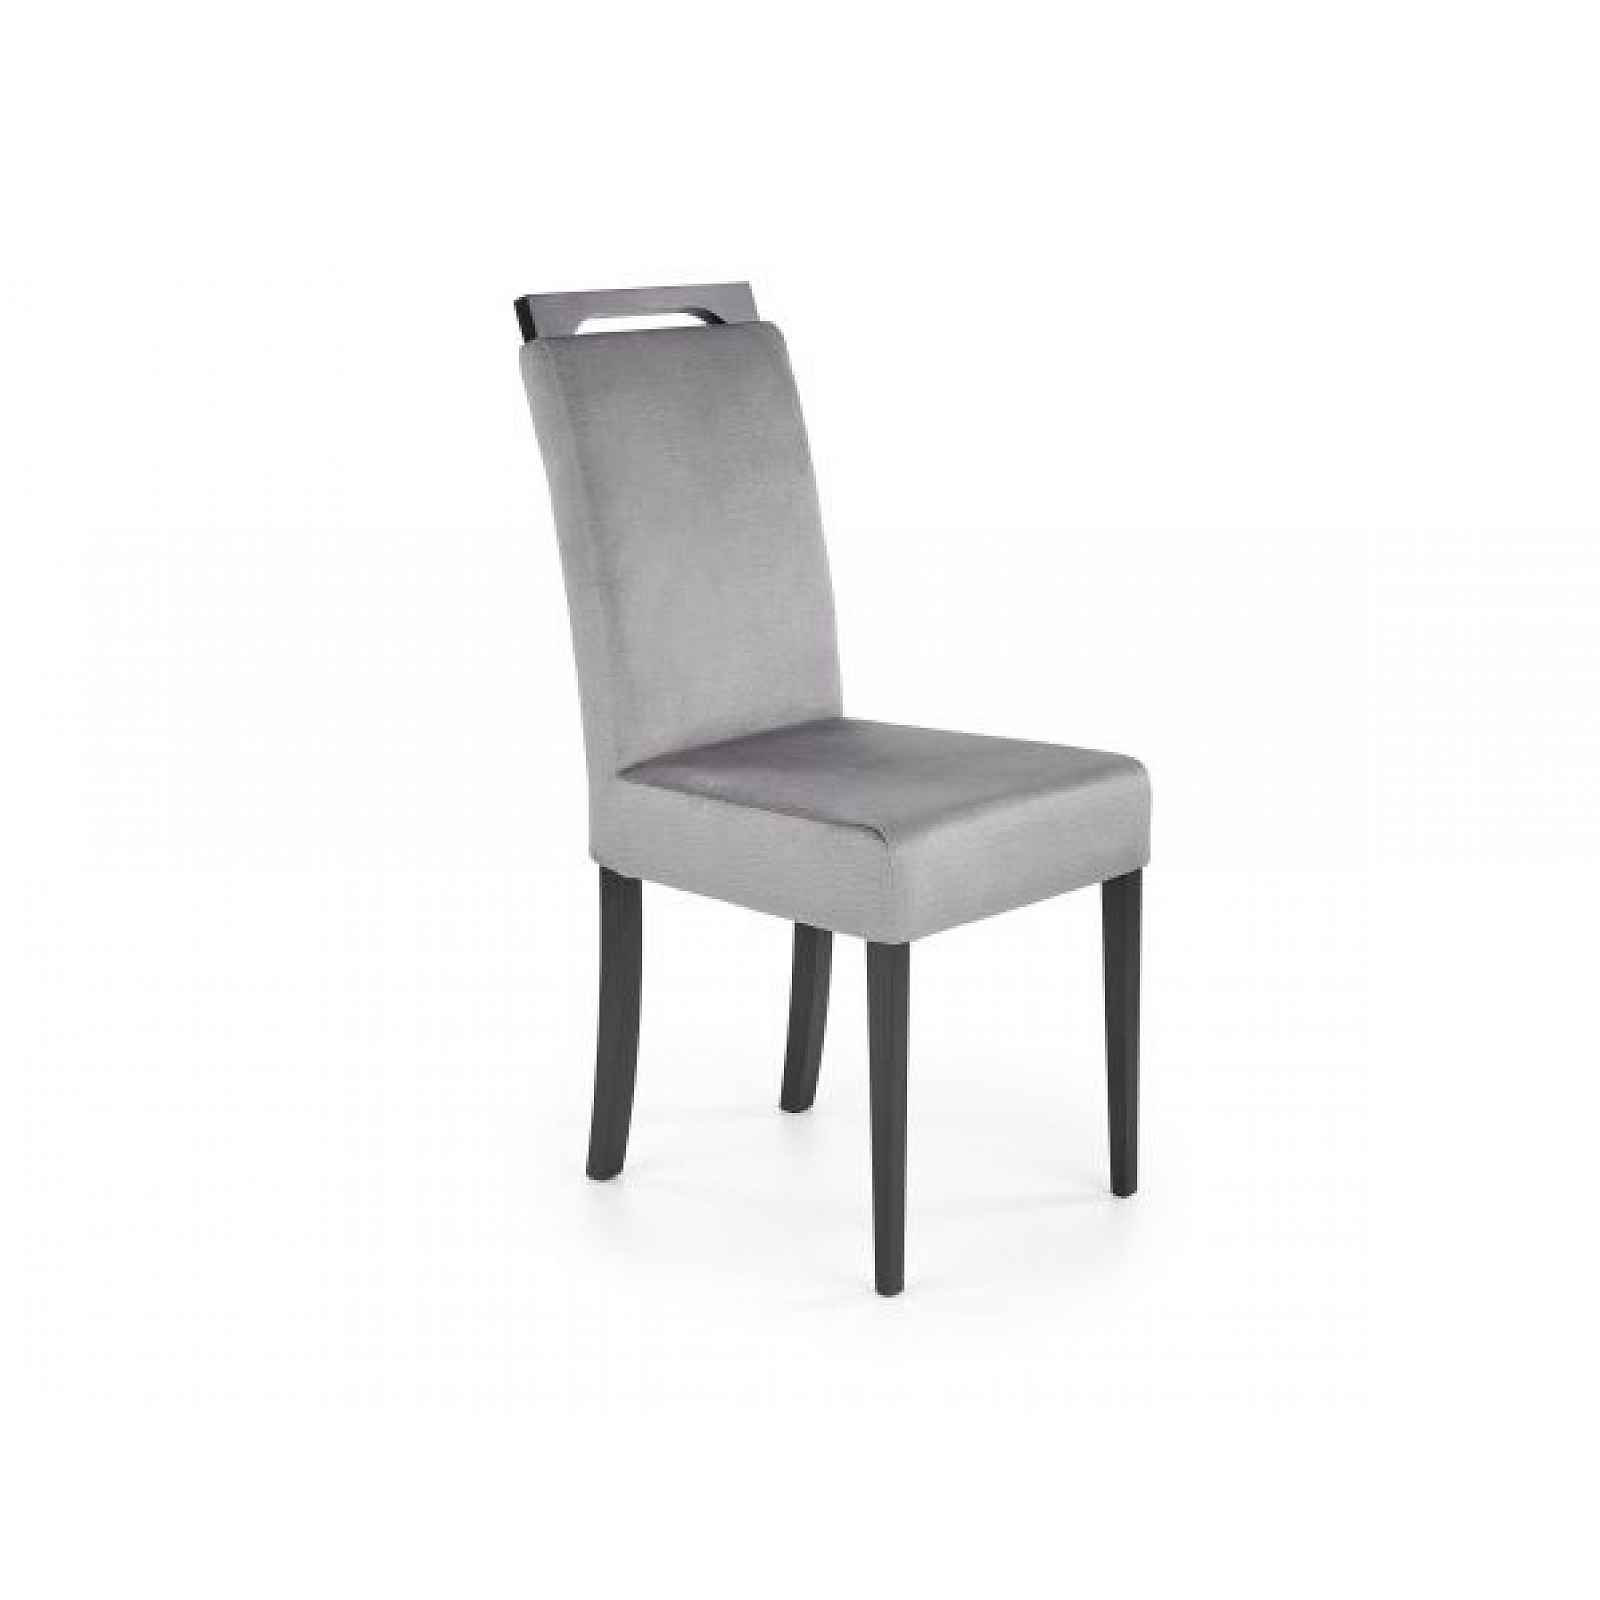 Jídelní židle CLARION 2 šedá